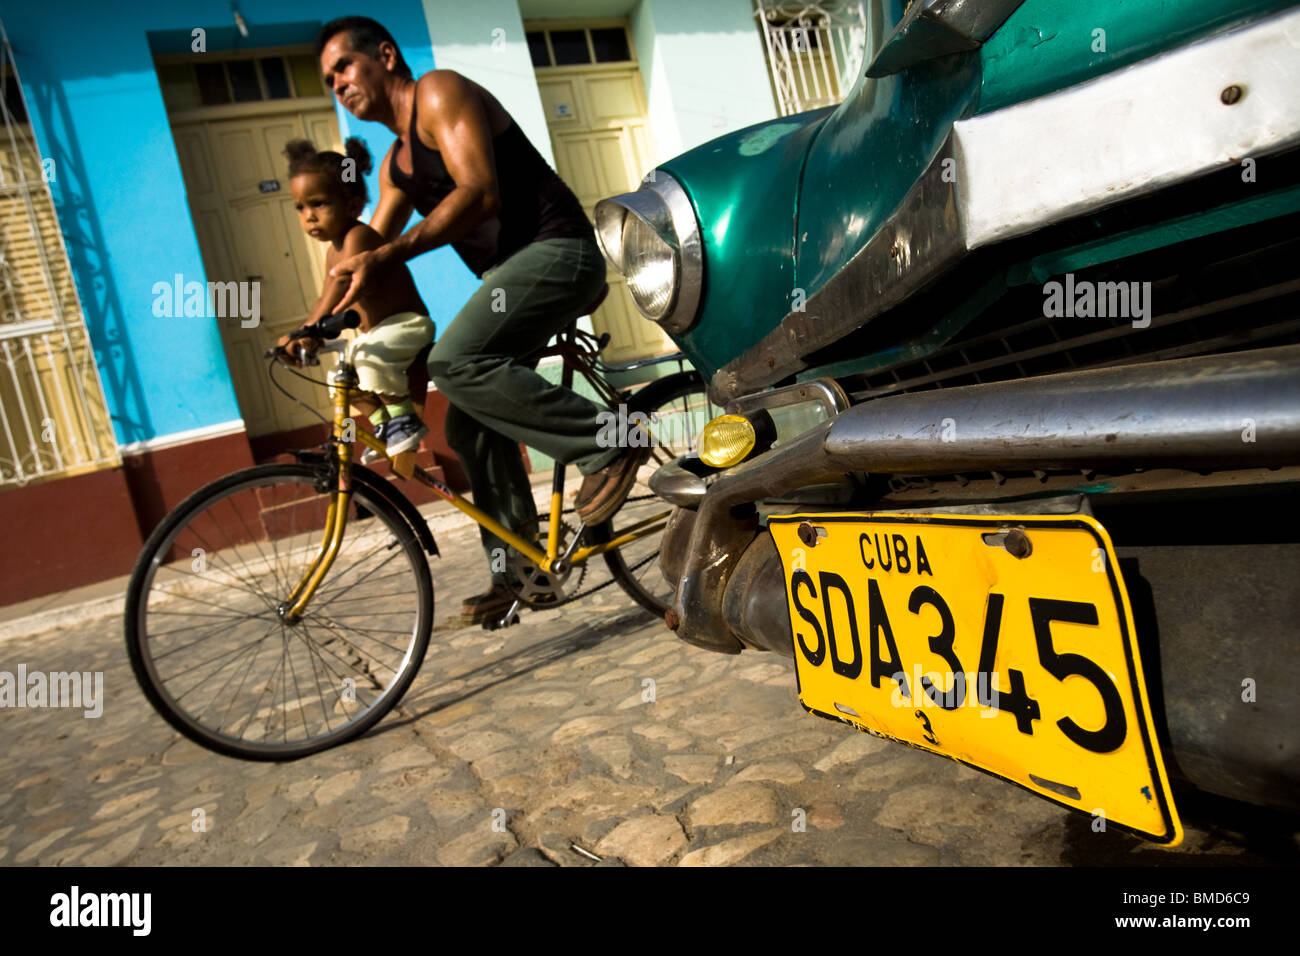 Un homme et une jeune fille monter à vélo cours des années 1950, une automobile stationnée sur la rue de Trinidad, Cuba le mercredi 2 juillet 2008. Banque D'Images